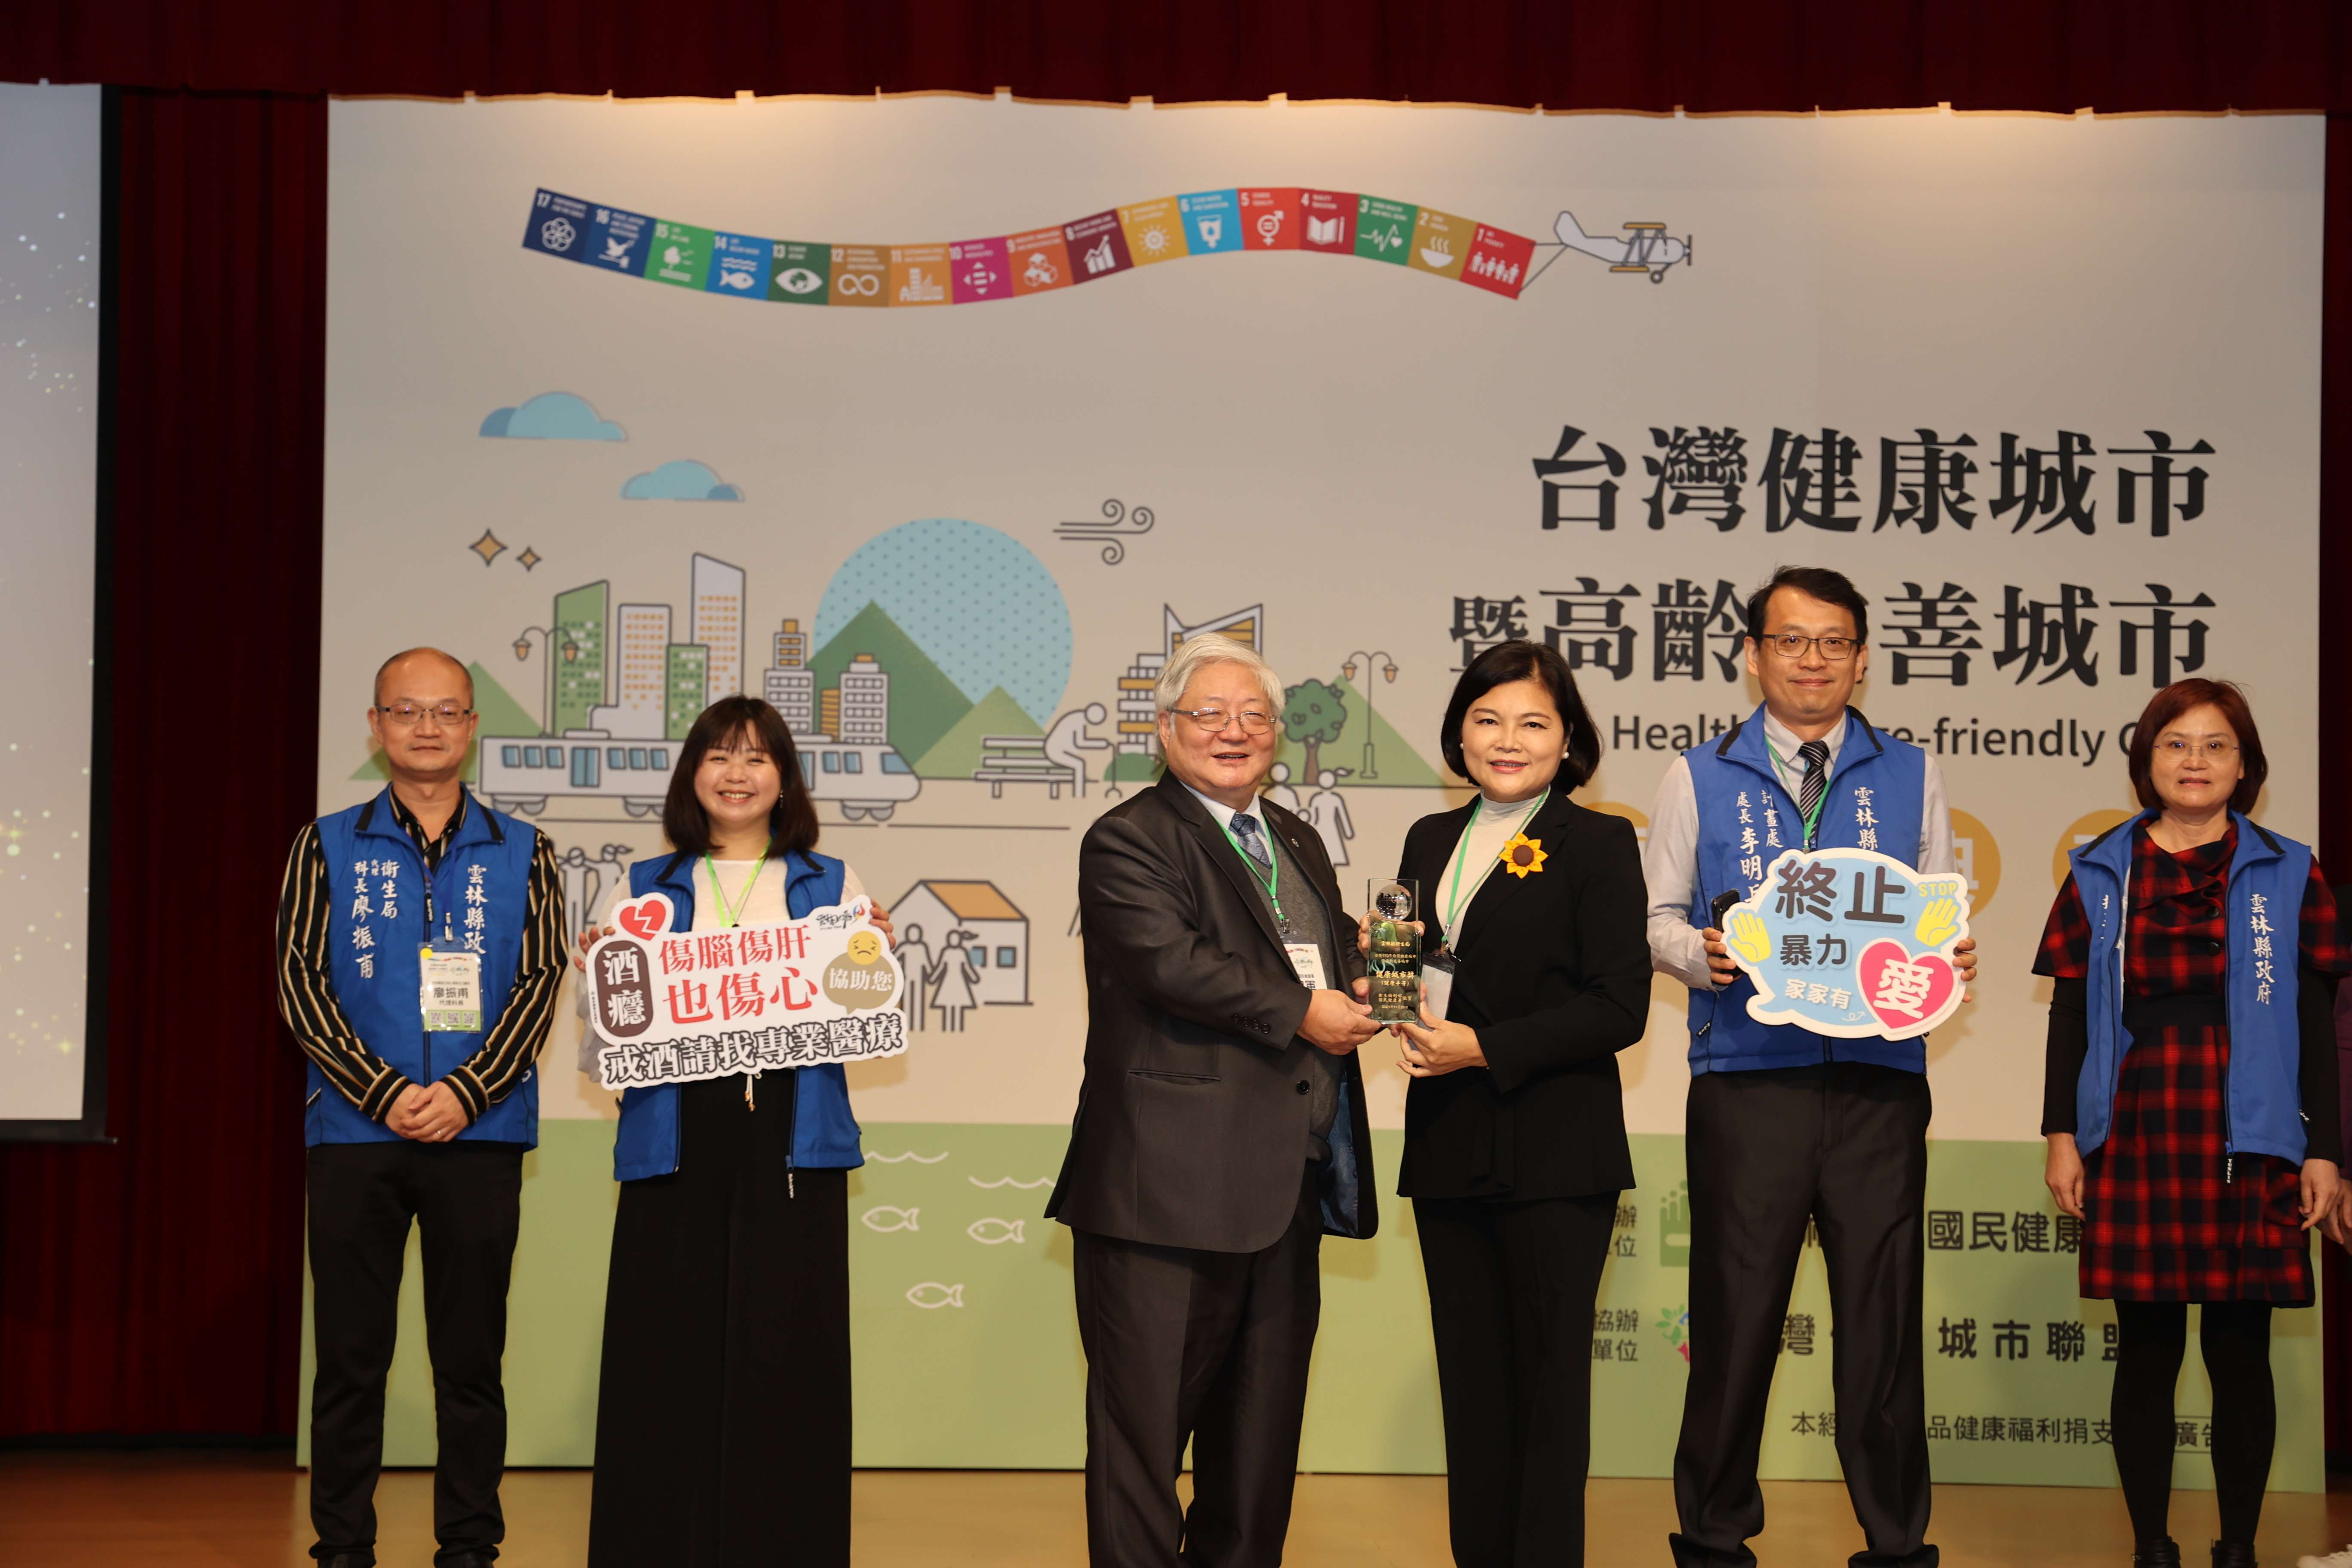 雲林縣政府榮獲「110年台灣健康城市暨高齡友善城市獎評選」健康城市類-「韌性與創新獎」、「健康平等獎」、「城市夥伴獎」及高齡友善城市獎類-「創新獎」、「活躍獎」 創下史上最佳紀錄 成績為非六都第一 全國第二